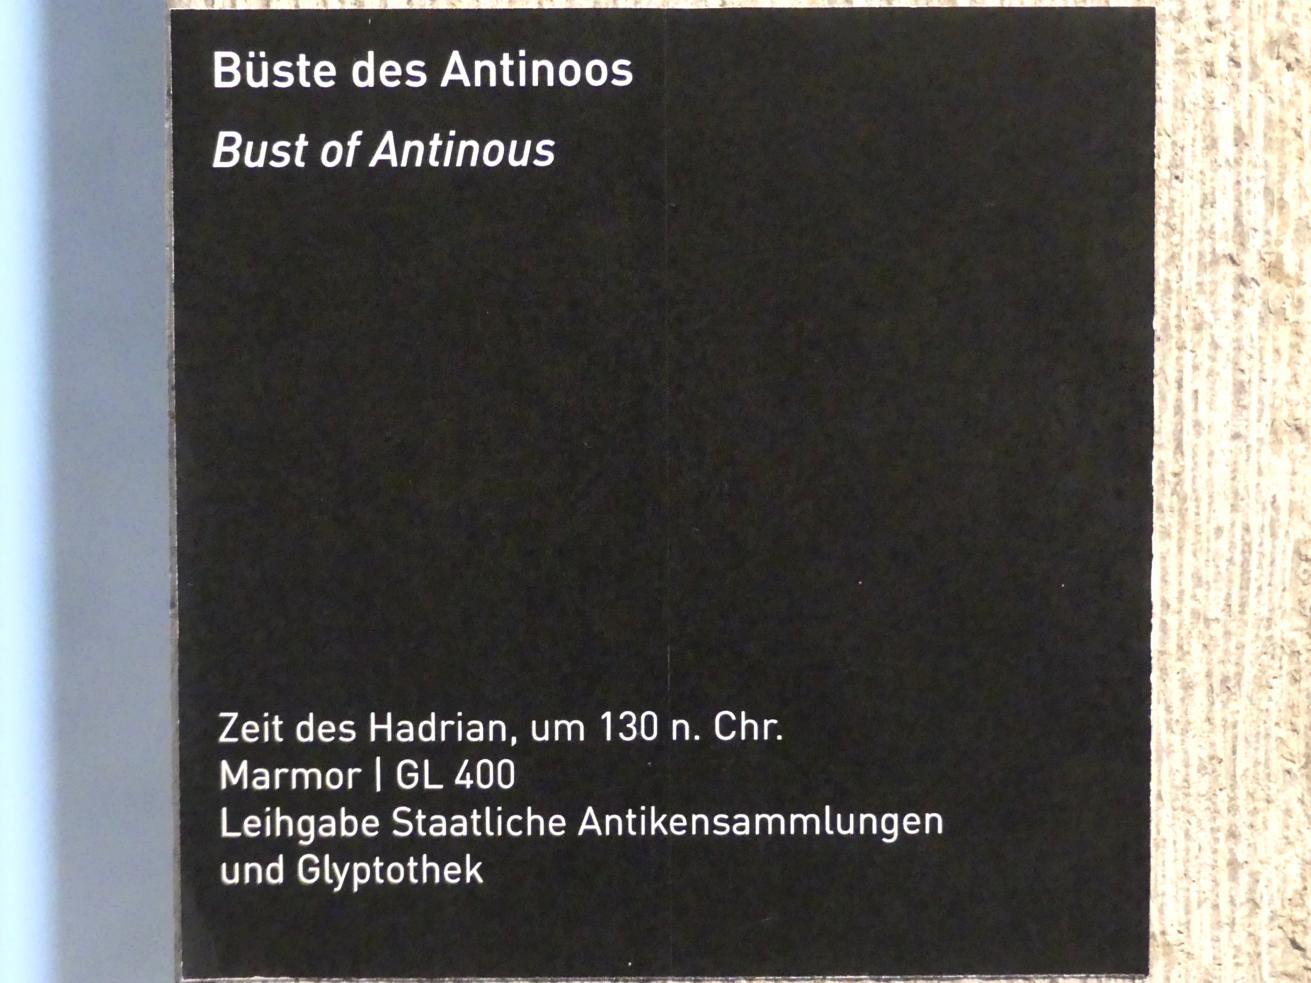 Büste des Antinoos, Römische Kaiserzeit, 27 v. Chr. - 54 n. Chr., 130, Bild 3/3